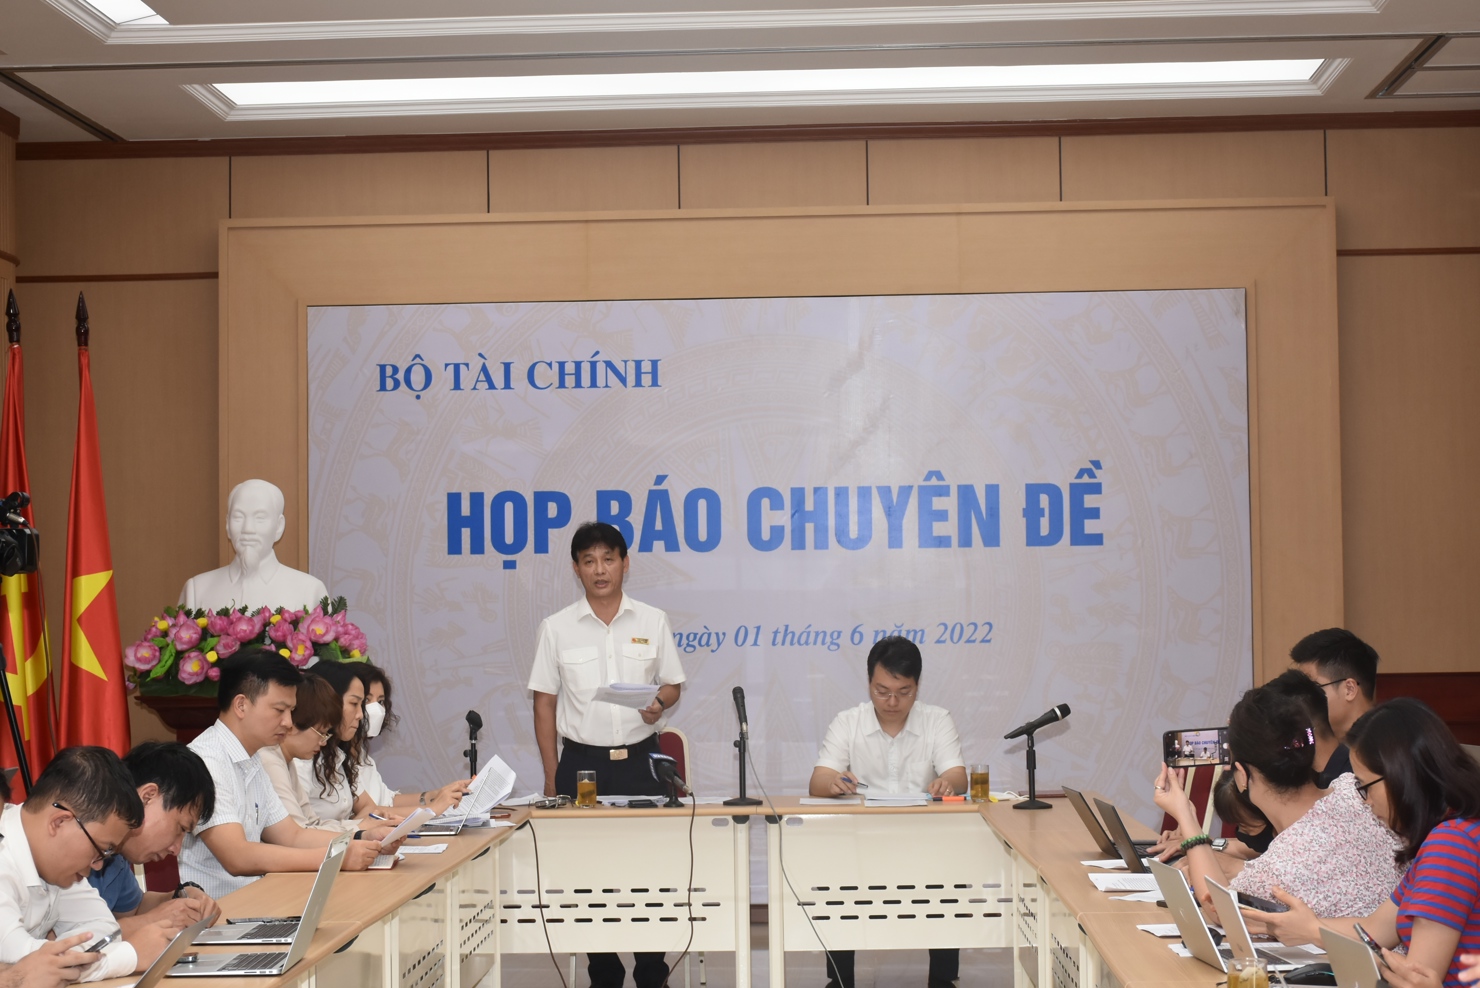  Phó Tổng cục Trưởng Tổng cục Thuế Đặng Ngọc Minh phát biểu tại cuộc họp báo.